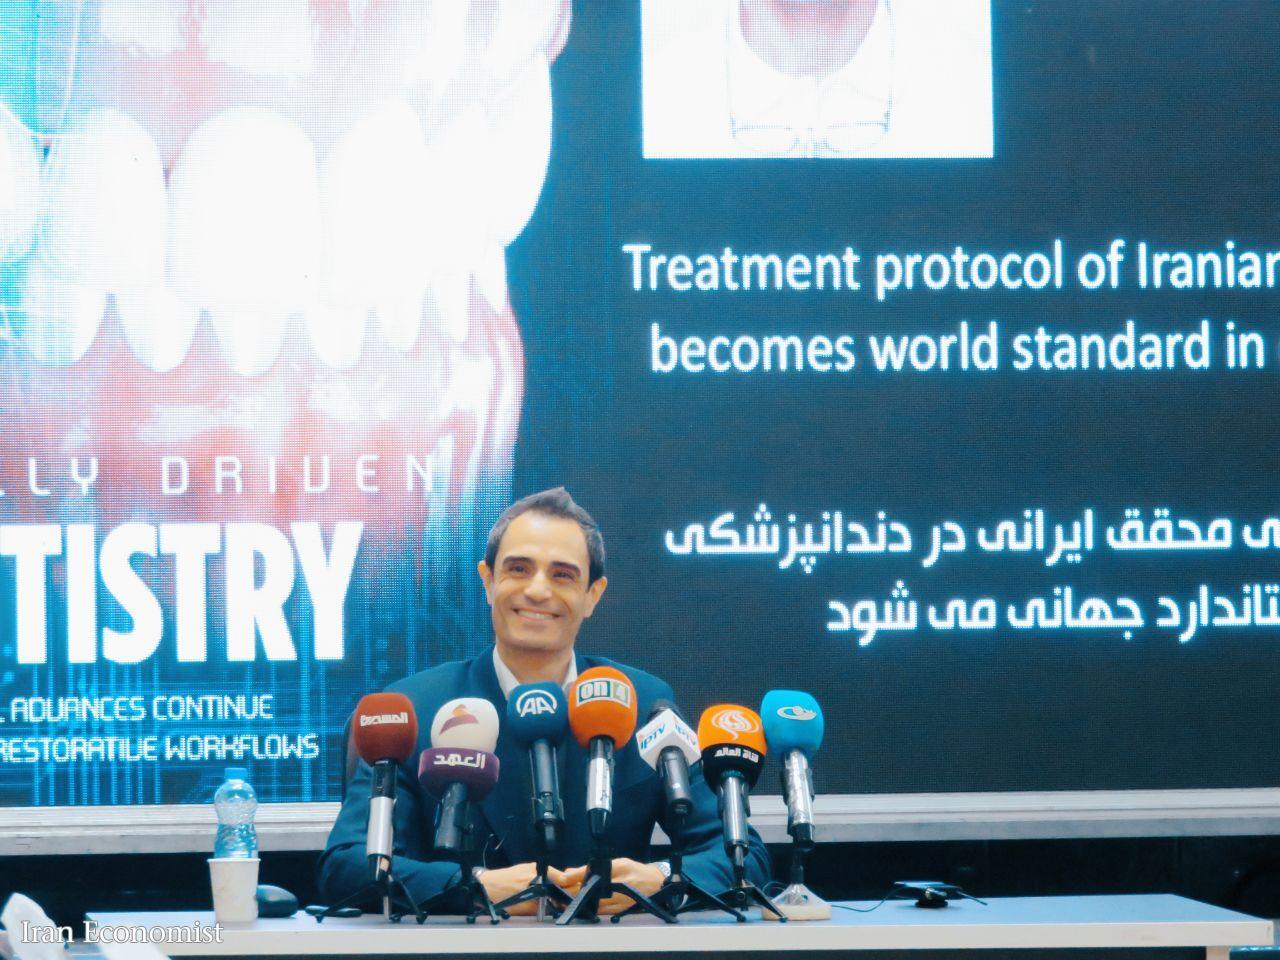 خجالت دندانپزشک مشهور ایرانی از کمبود بودجه/ دکتر شکیبایی: تکنولوژی ابداعی ما در آمریکا هم وجود ندارد!